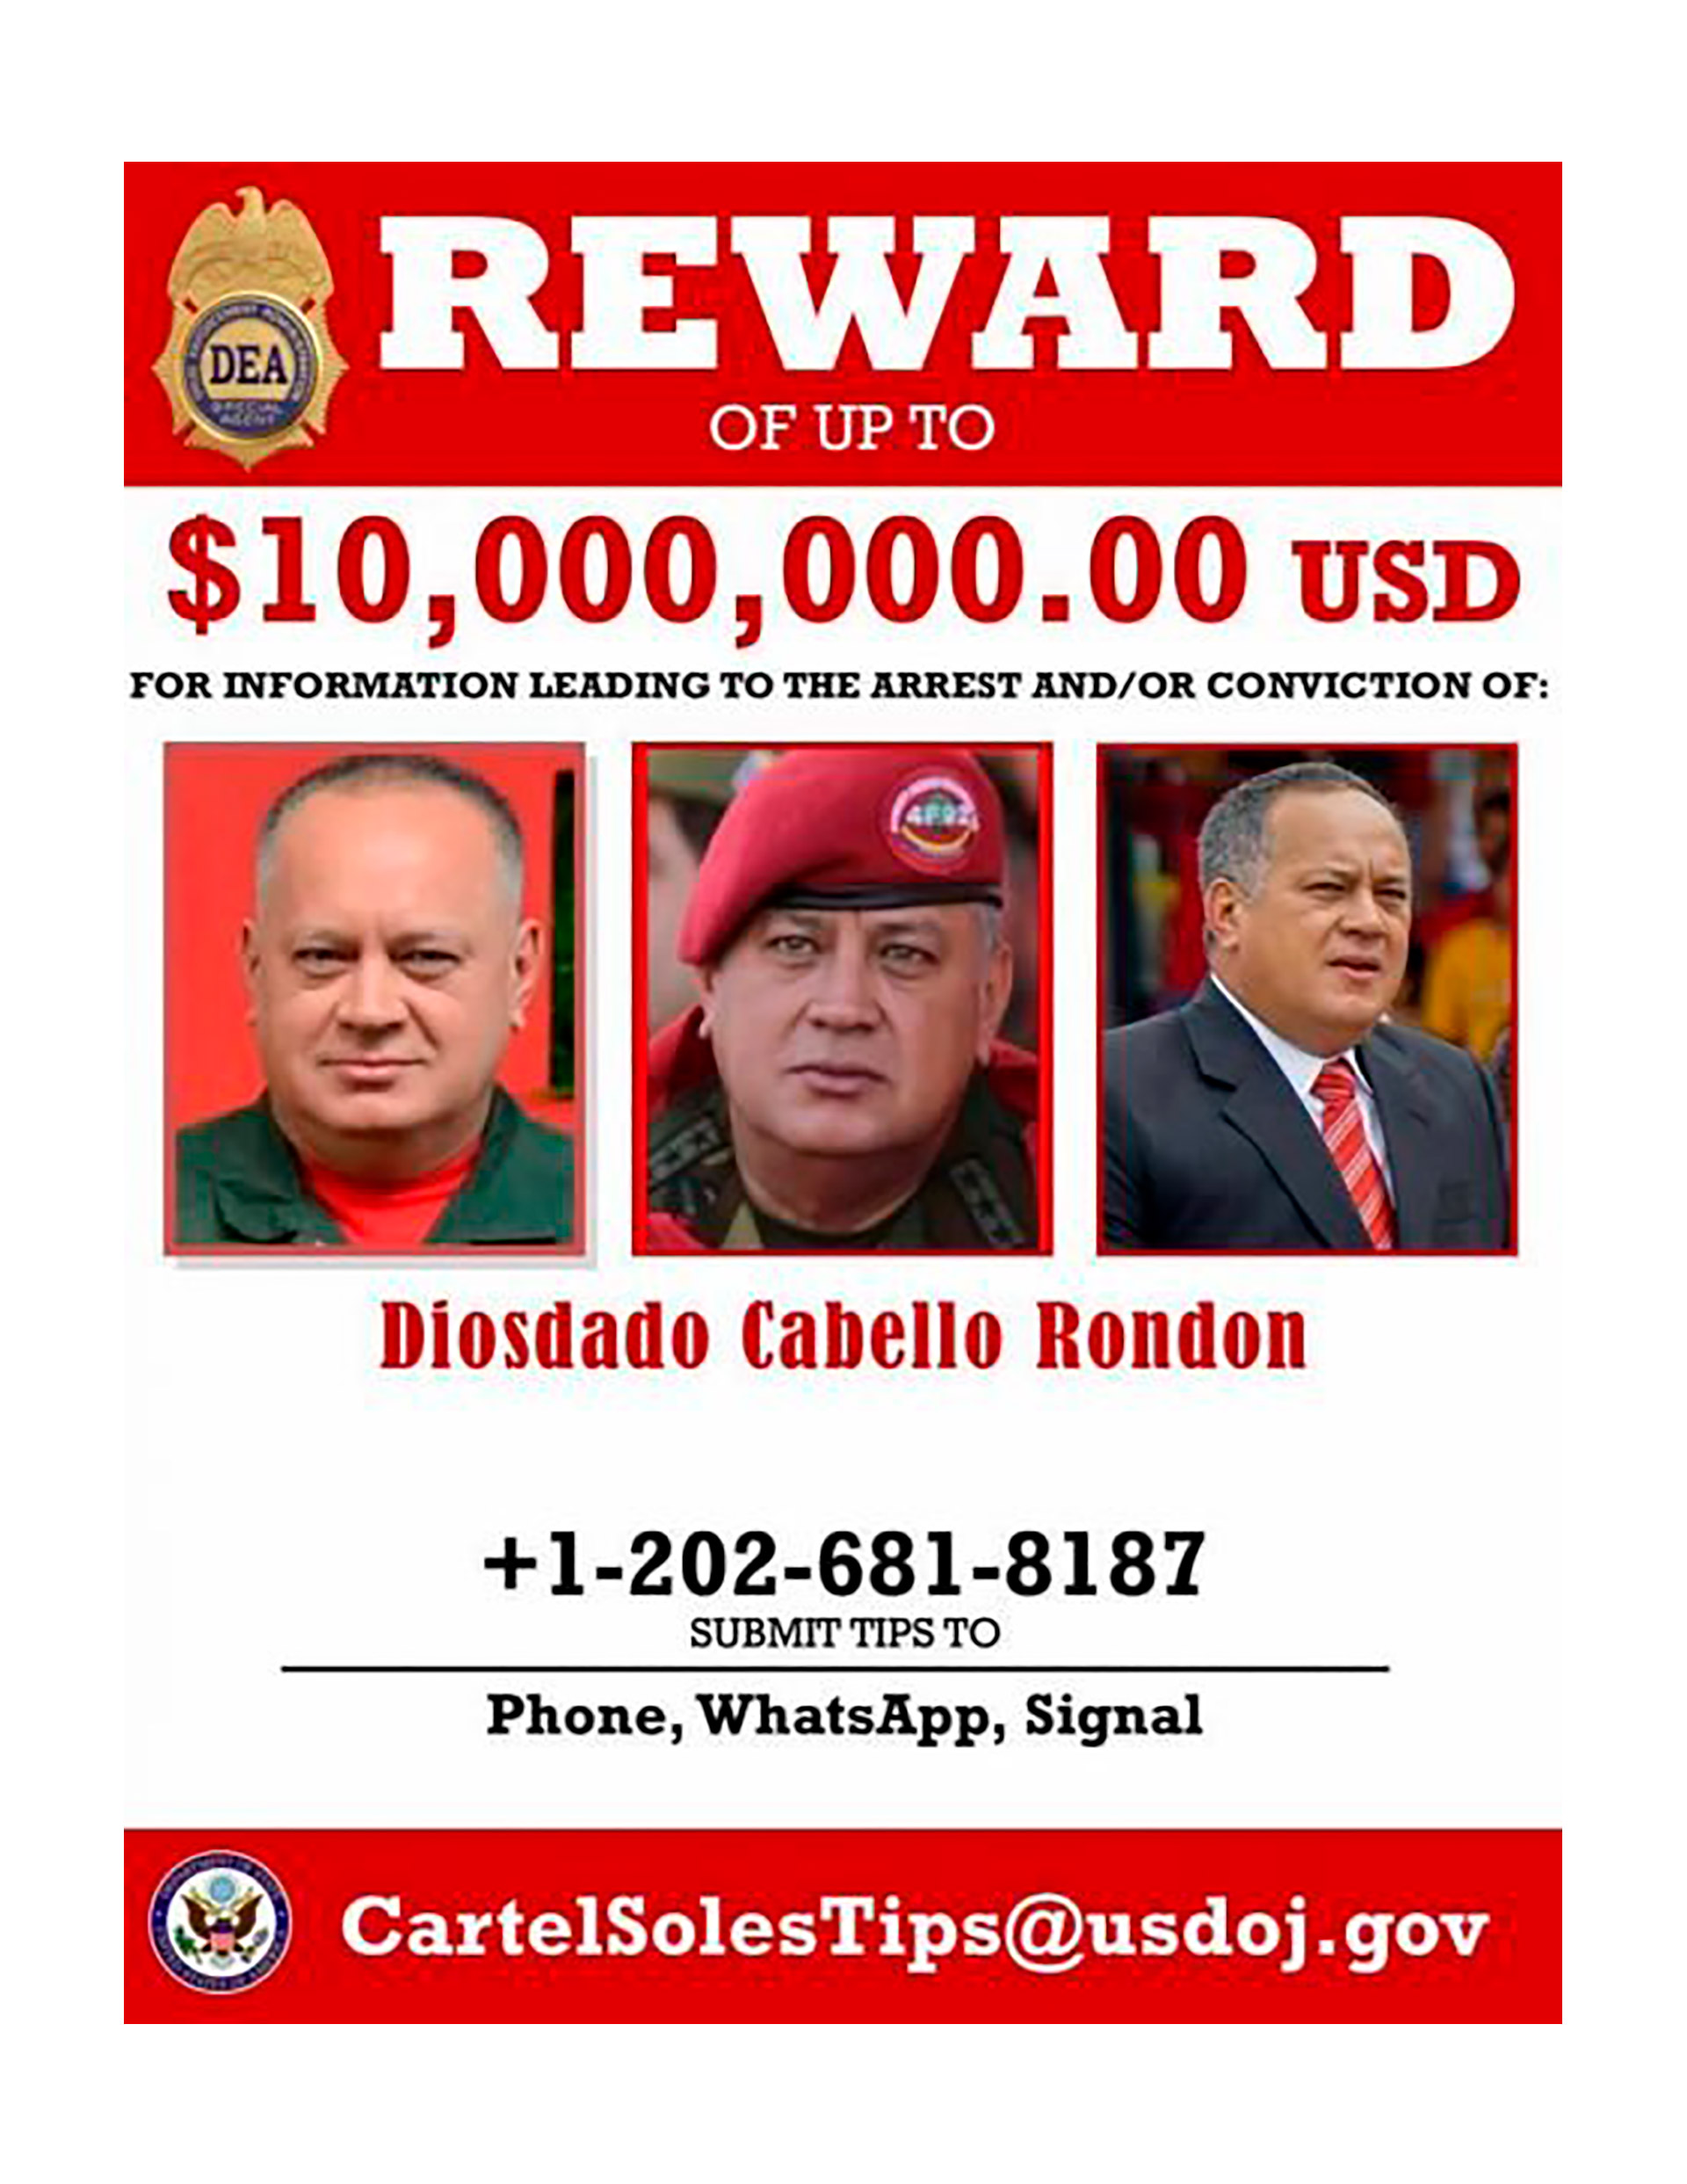 La publicación de la DEA sobre la recompensa a cambio de Diosdado Cabello